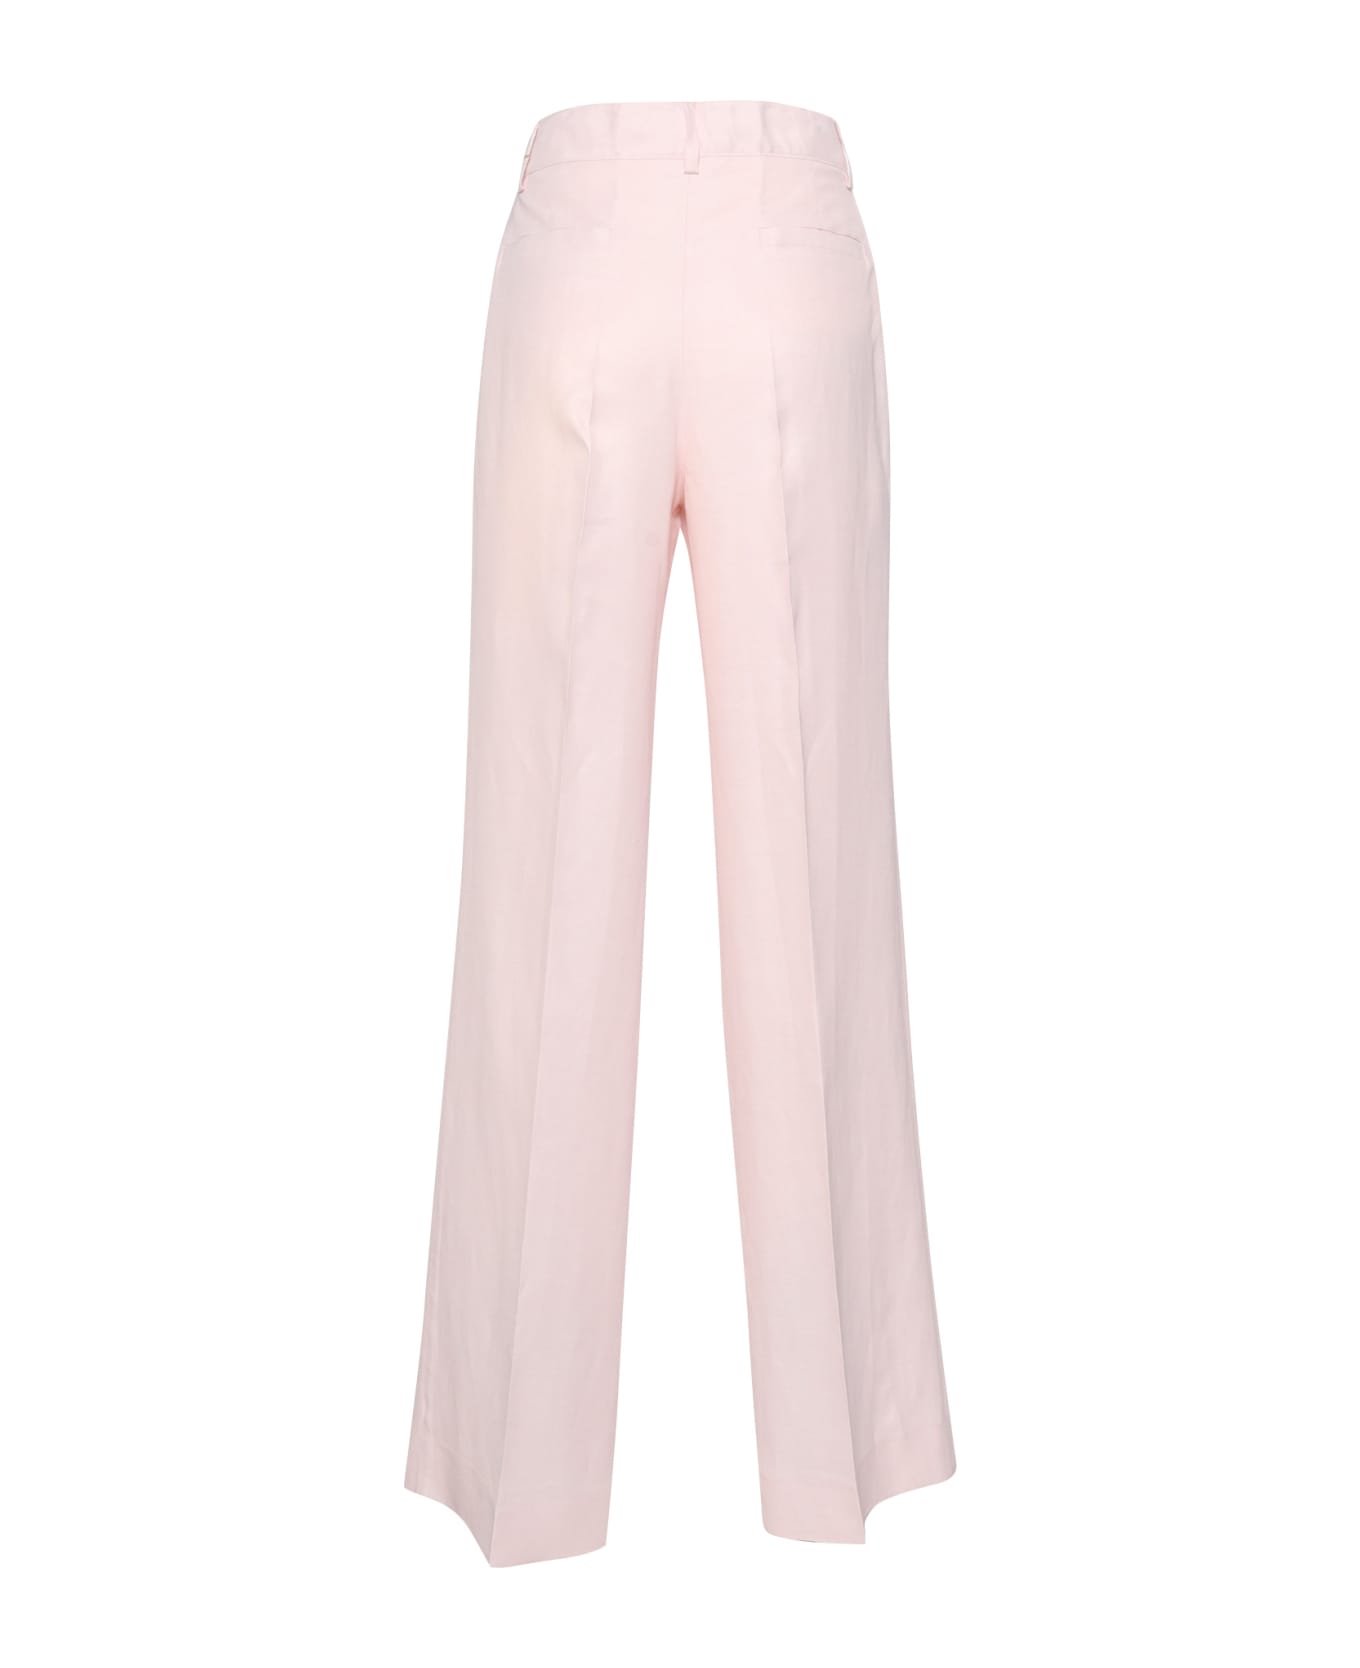 Parosh Pantalone Elegante Donna - PINK ボトムス